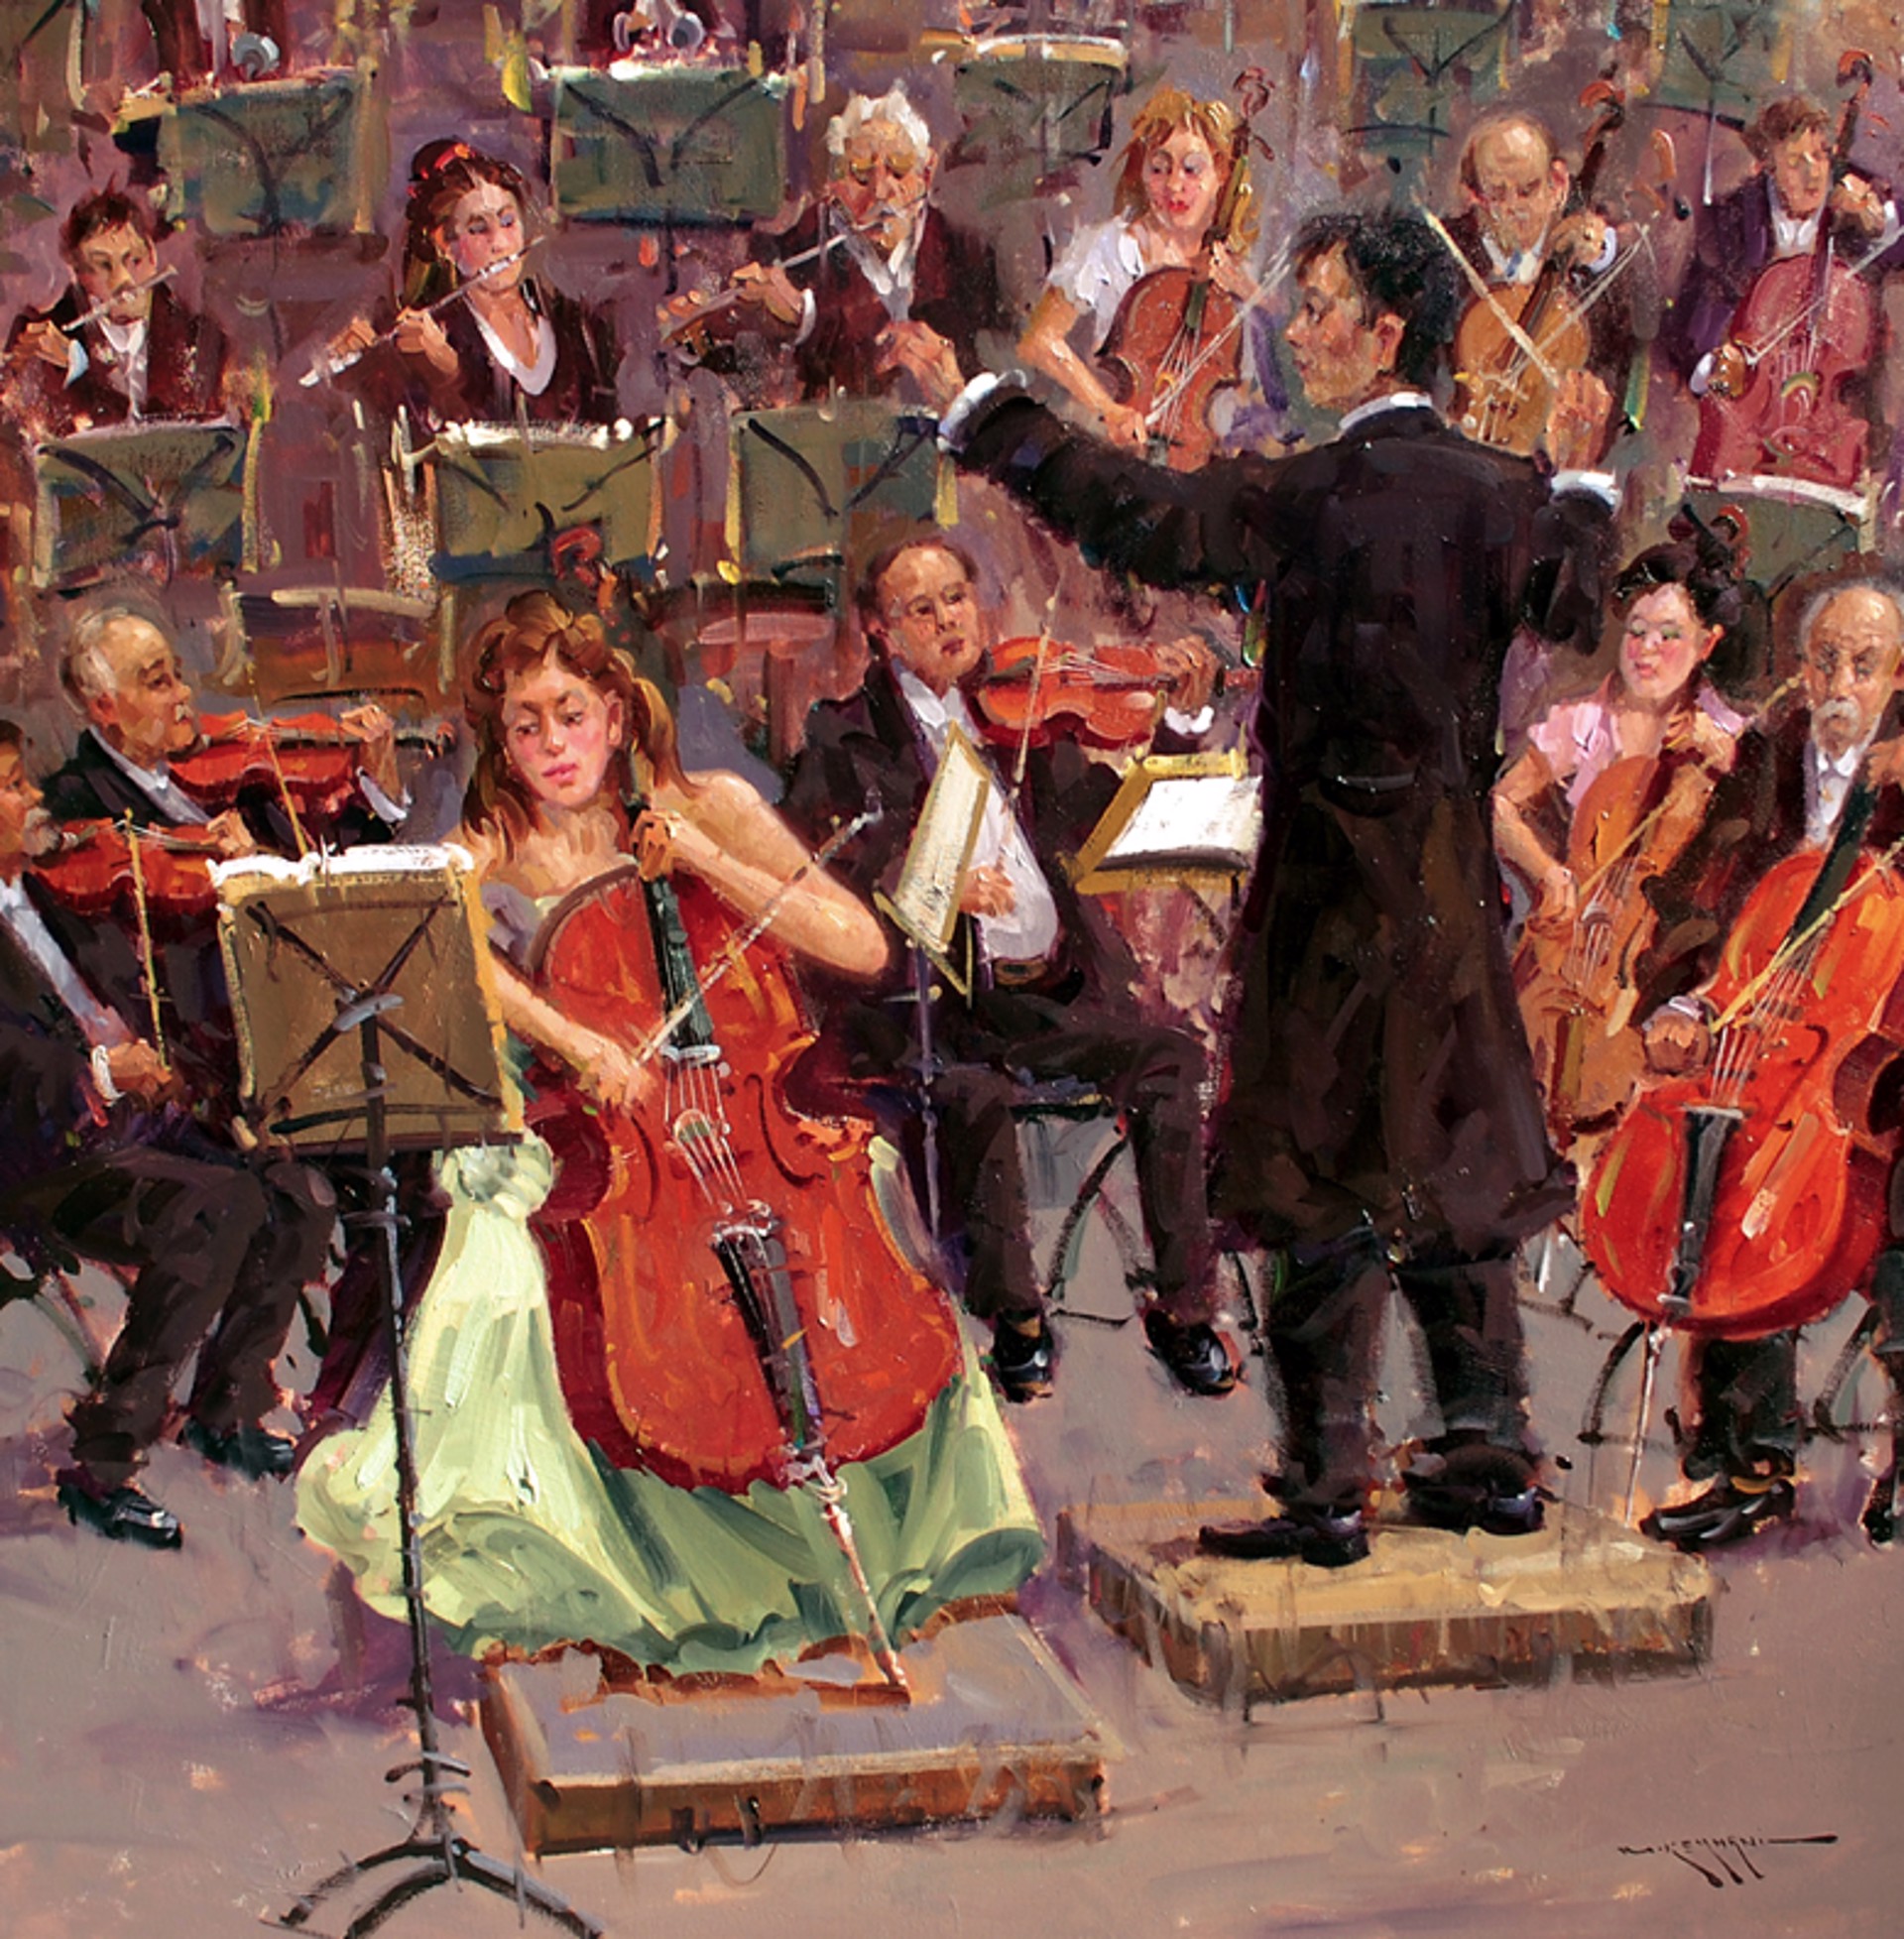 Orchestra by Mostafa Keyhani